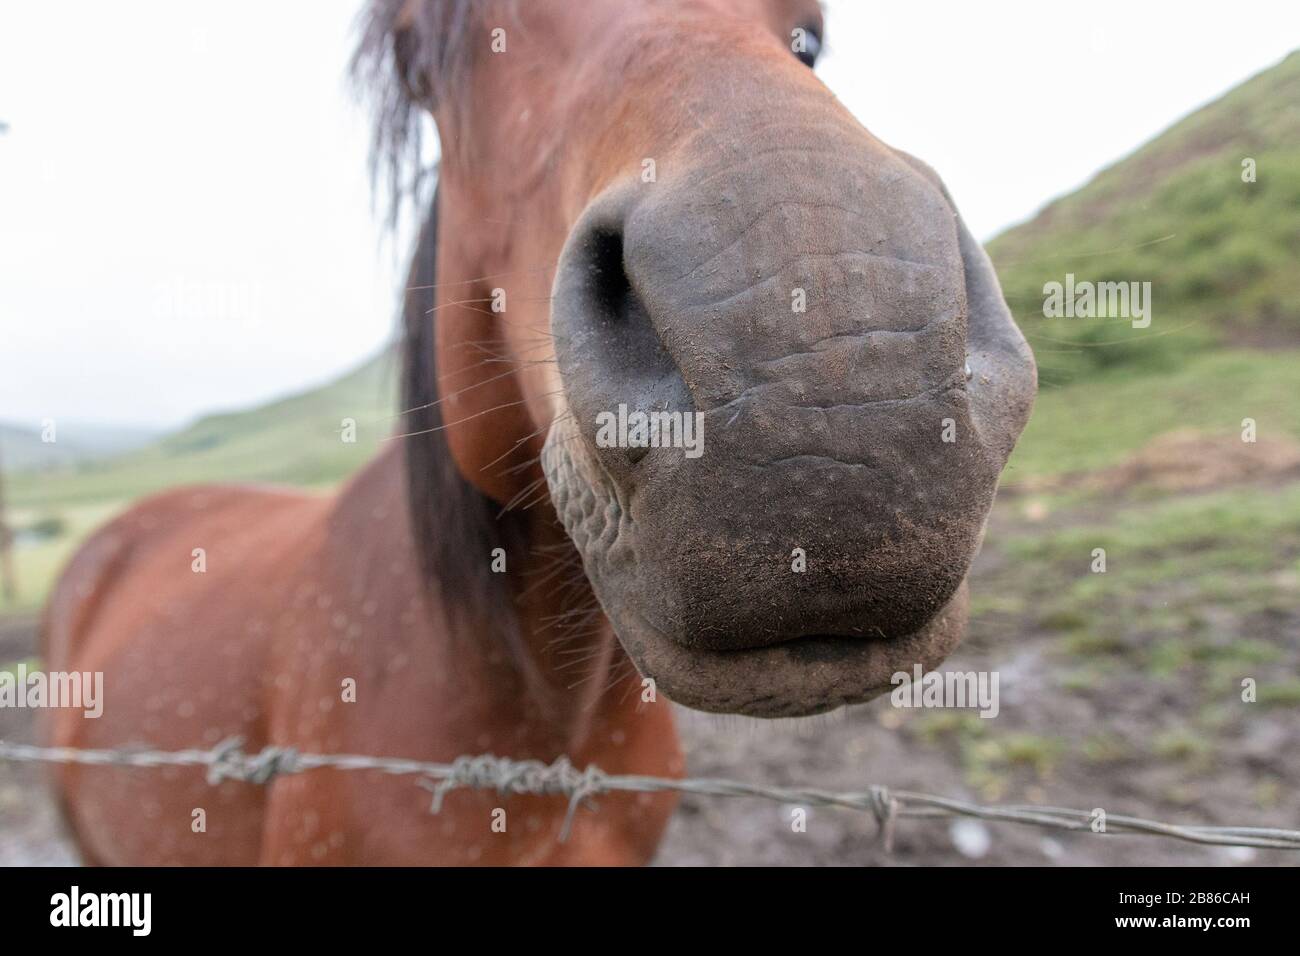 una vista de cerca de alguien tocando la nariz de un caballo de la bahía marrón mientras se encuentran en un fangoso potrero al aire libre Foto de stock